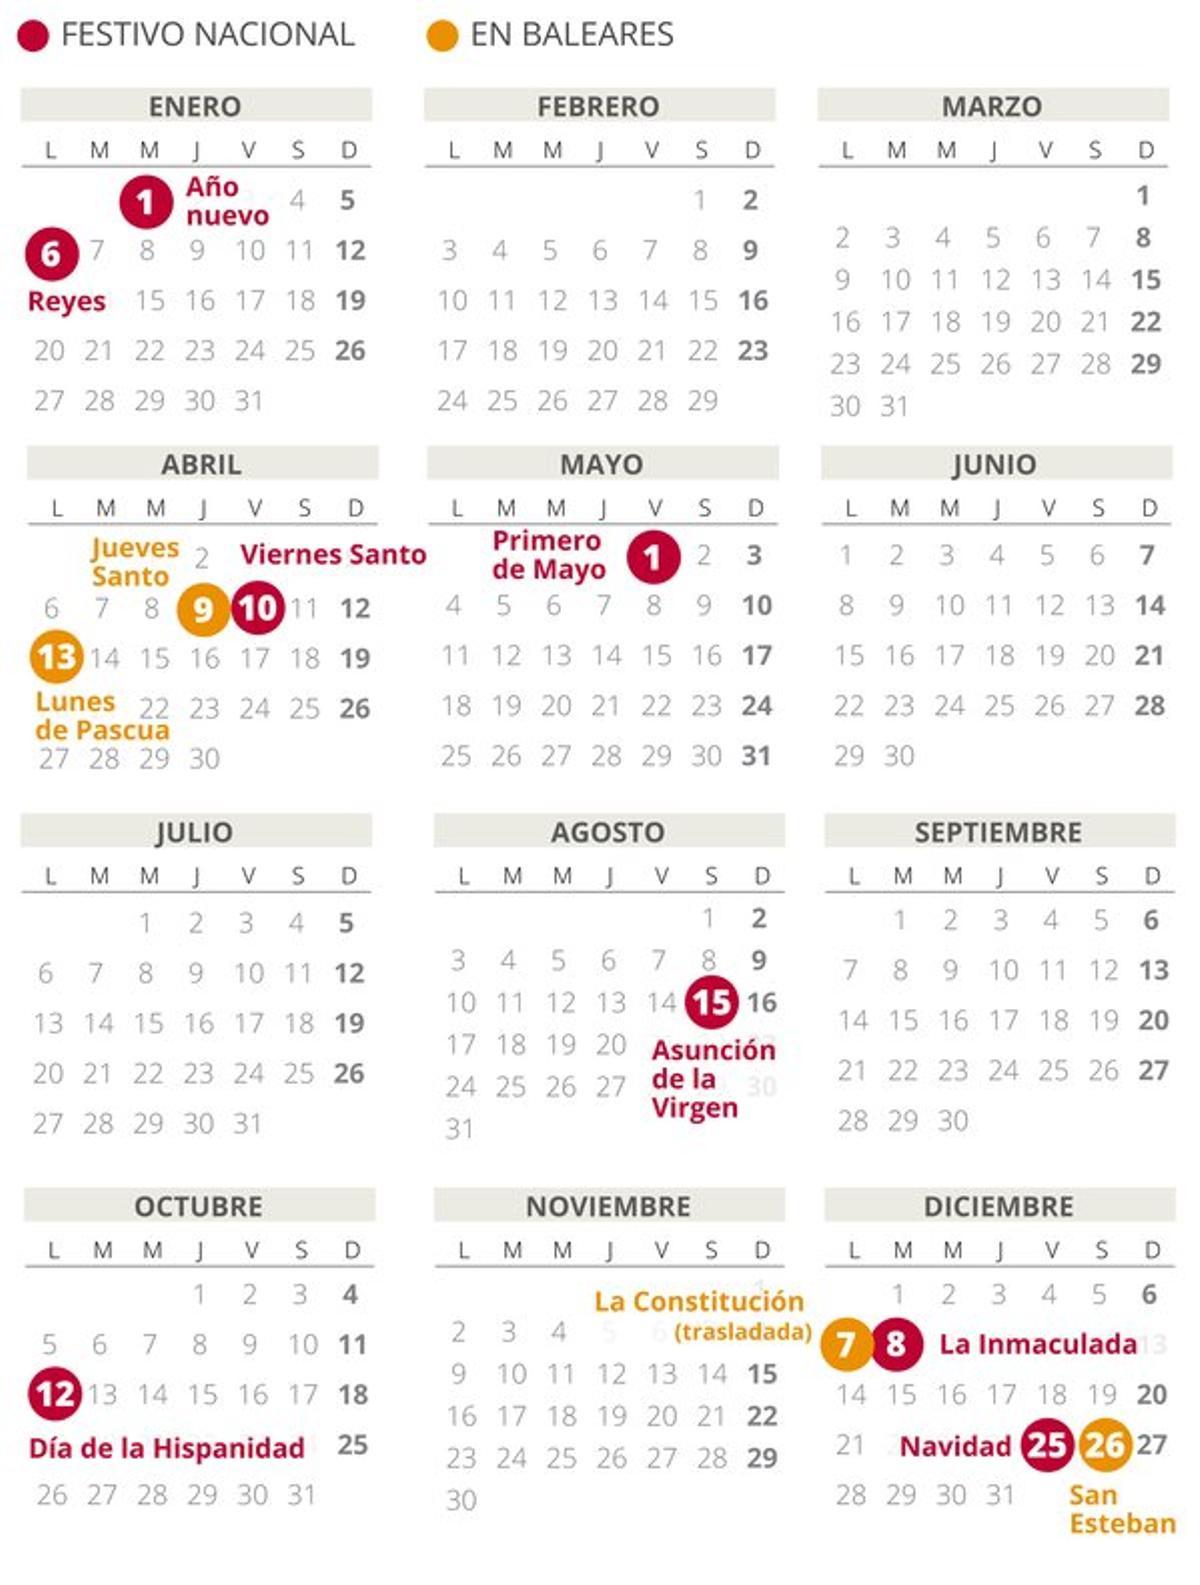 Calendario laboral de Baleares del 2020.